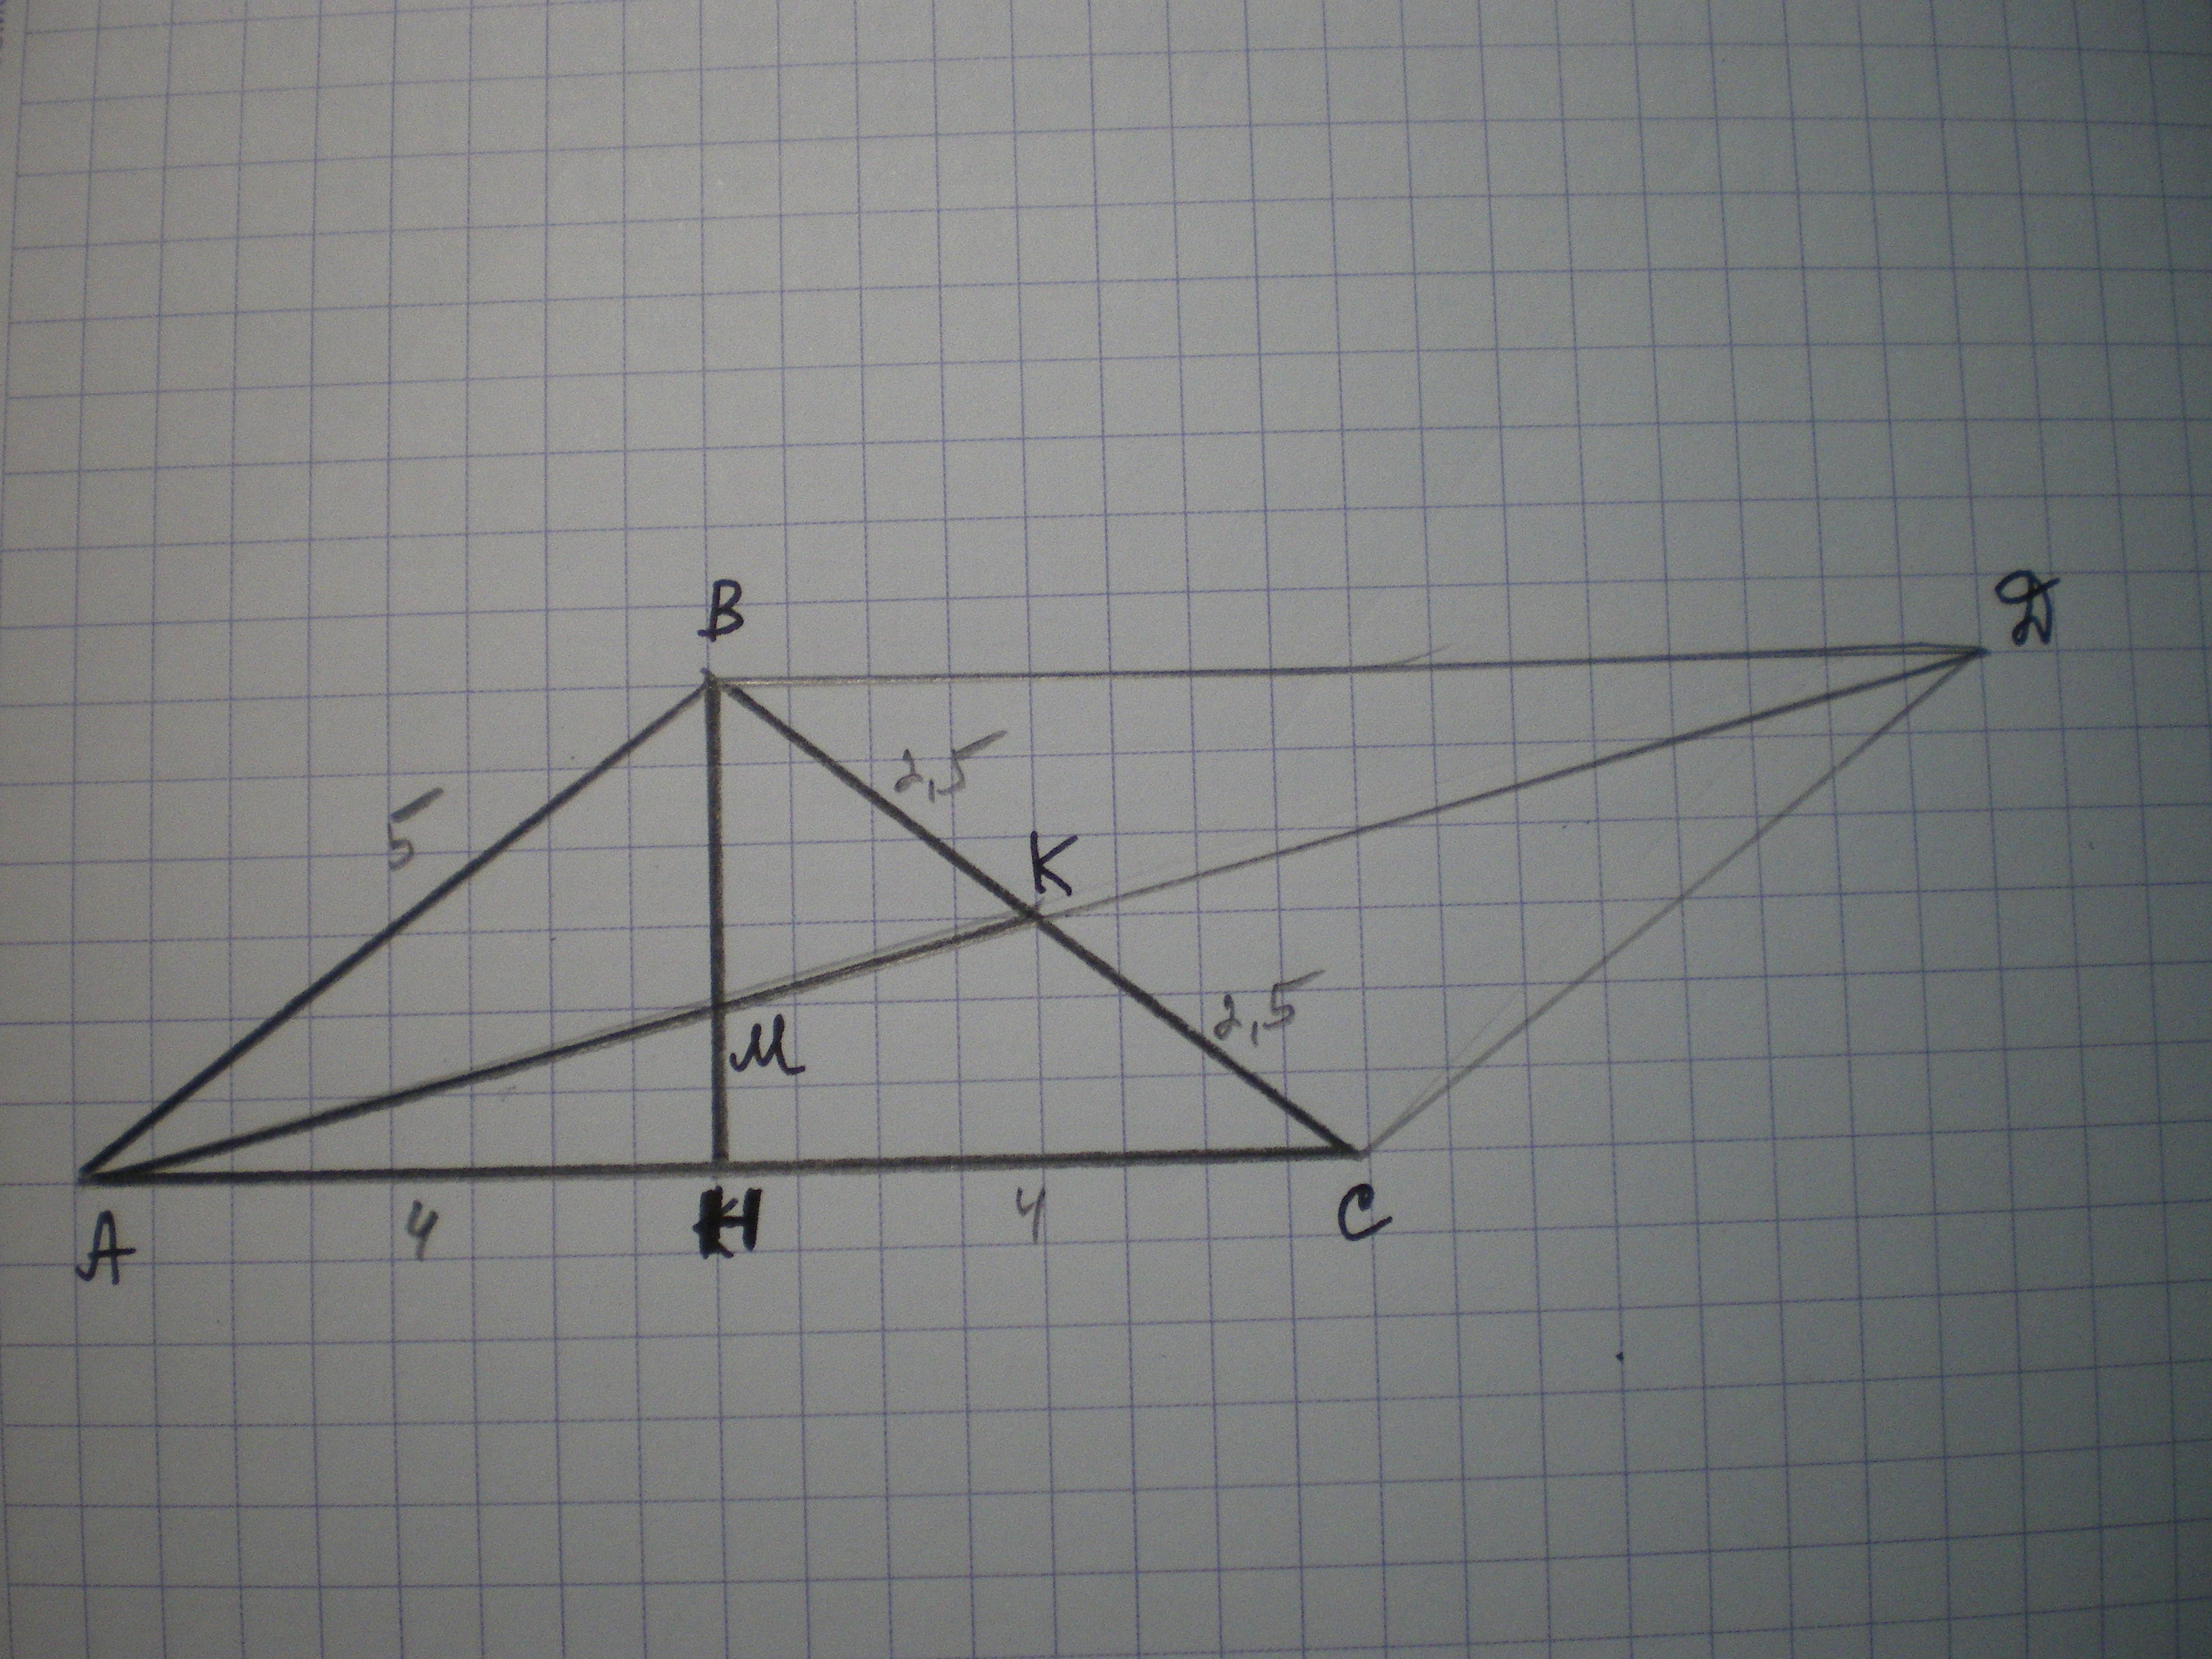 Ав 5 вс 15 найти ак. Треугольник АВ' АК Медиана треугольника АВС. Биссектриса тупого треугольника. Треугольник АВС, ВМ - Медиана, ар- биссектриса.АС:АВ=7:10. АВ: АС = АВ: вс.